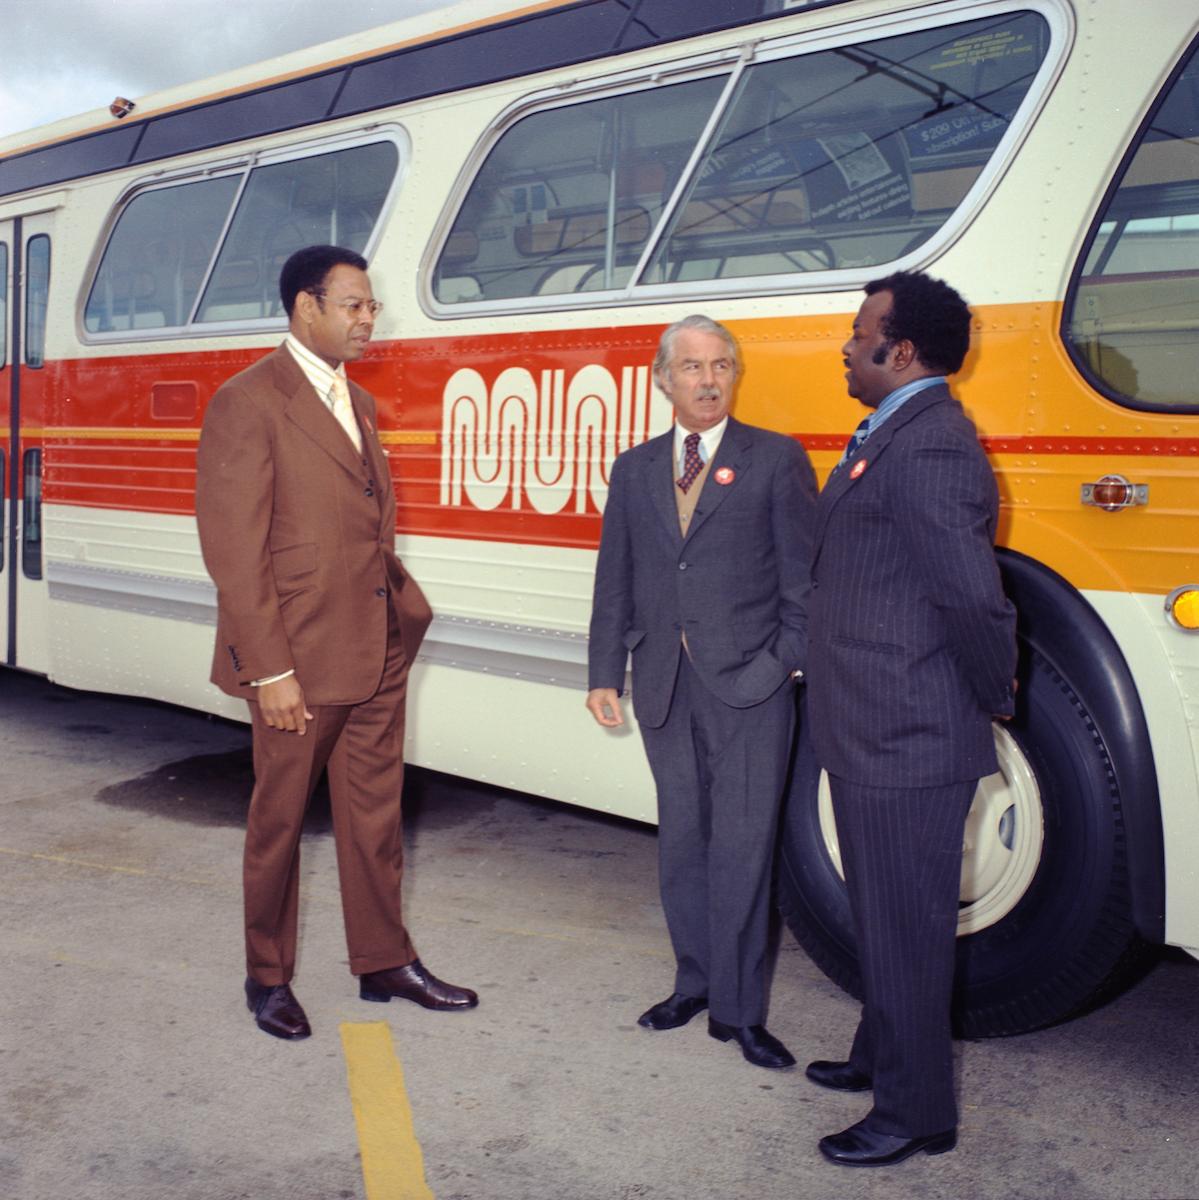 Welton Flynn, Curtis Green, and Walter Landor next to Muni Bus